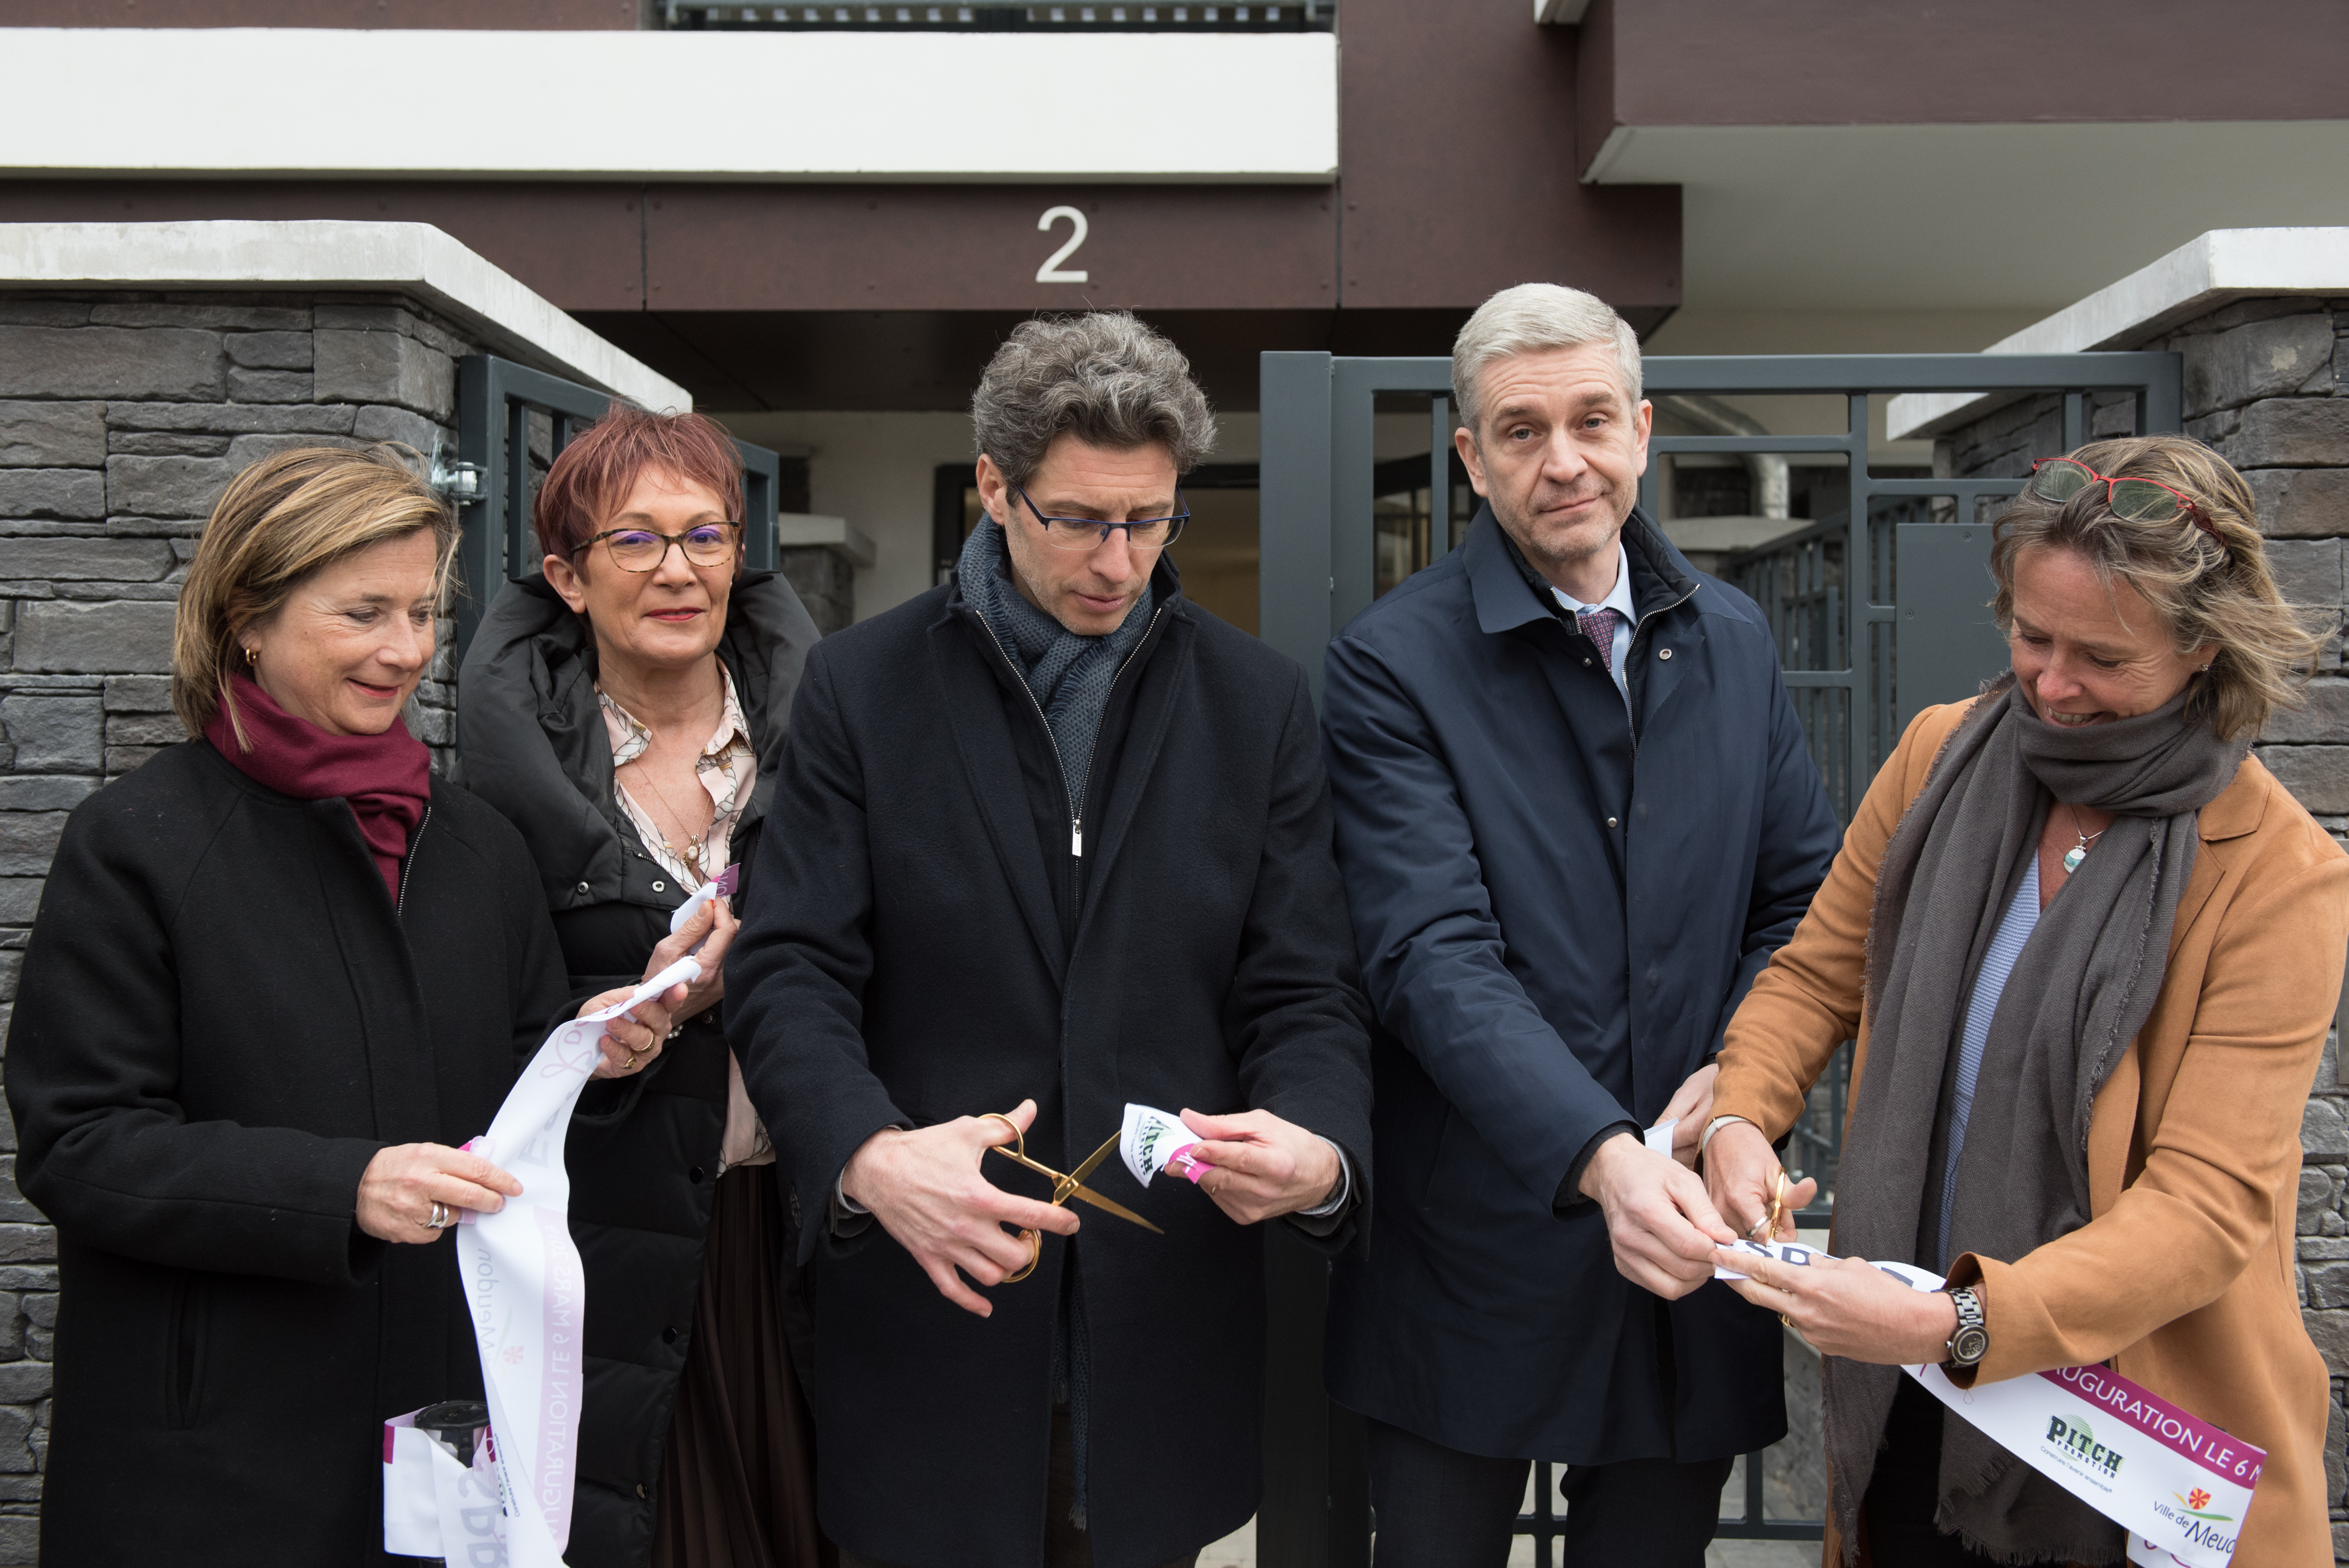 Pitch Promotion : inauguration de la résidence Esprit Rodin à Meudon